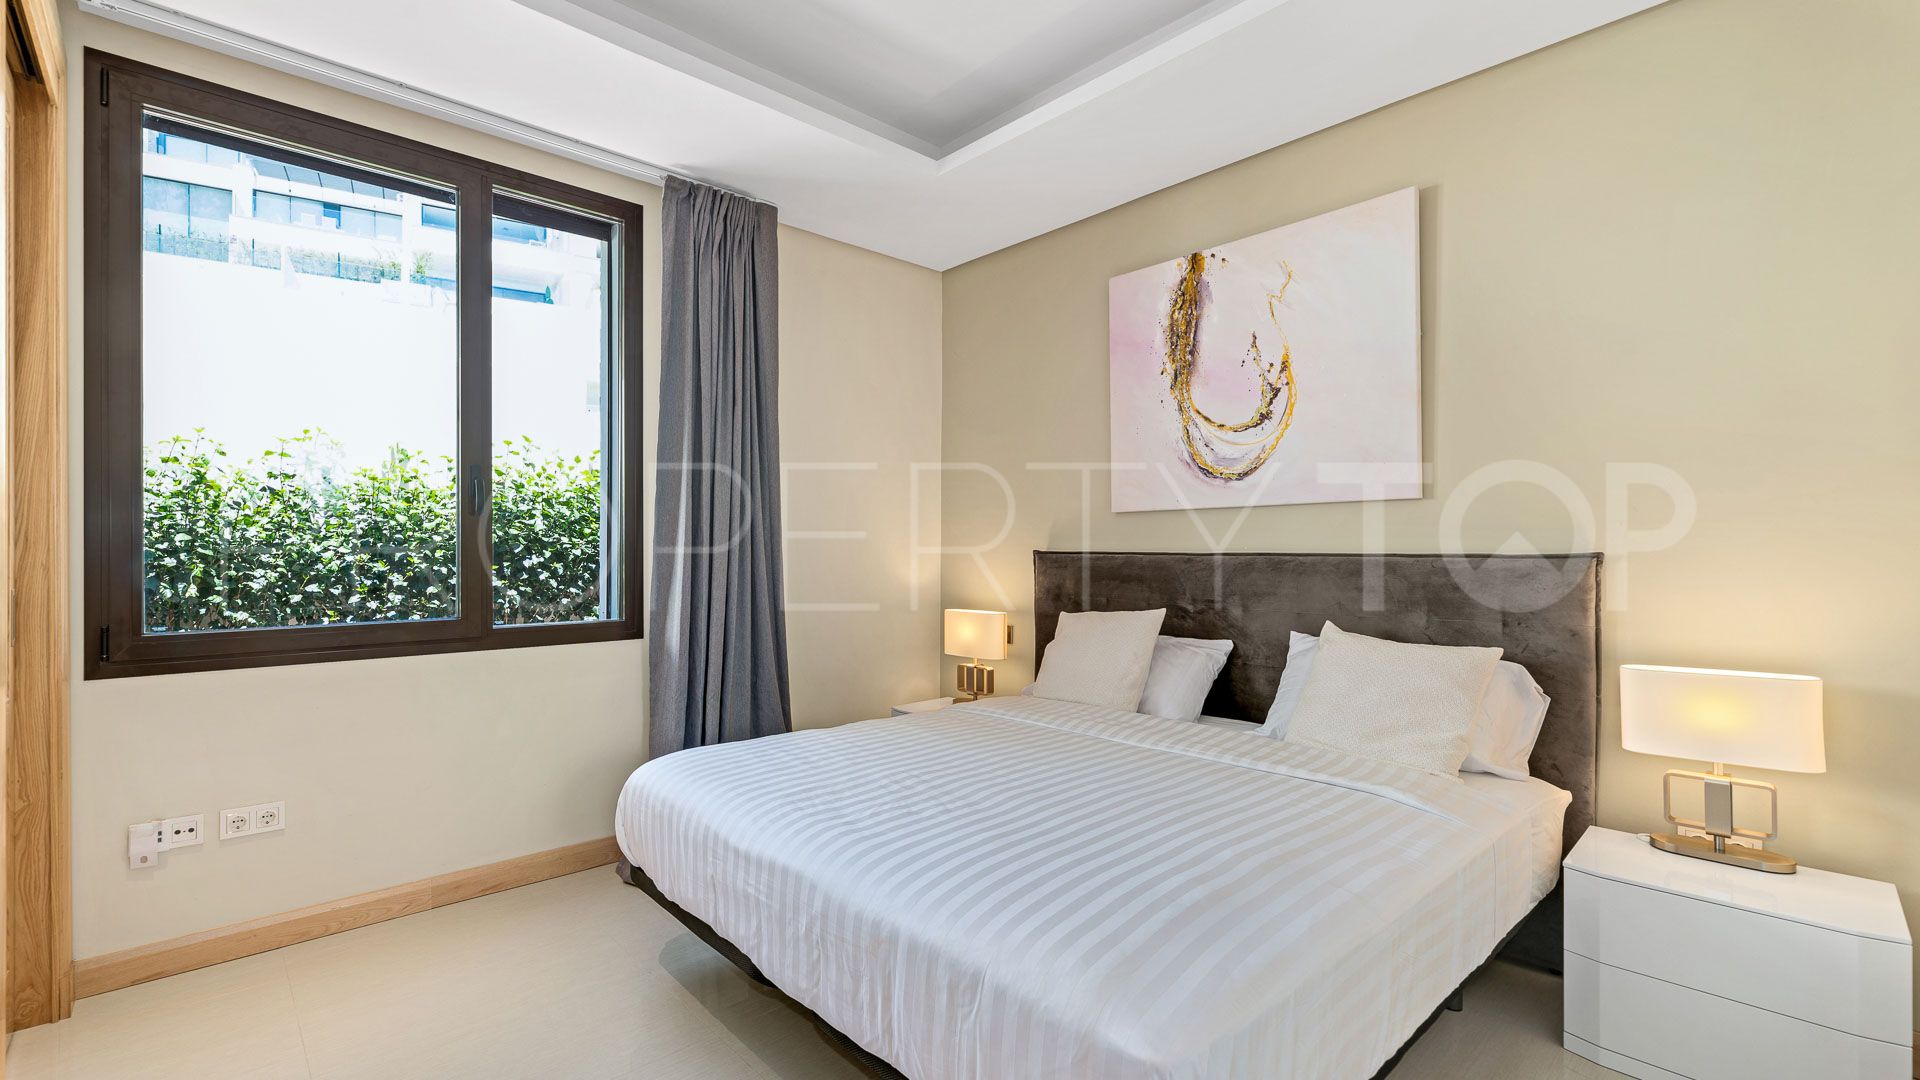 Buy La Quinta villa with 5 bedrooms